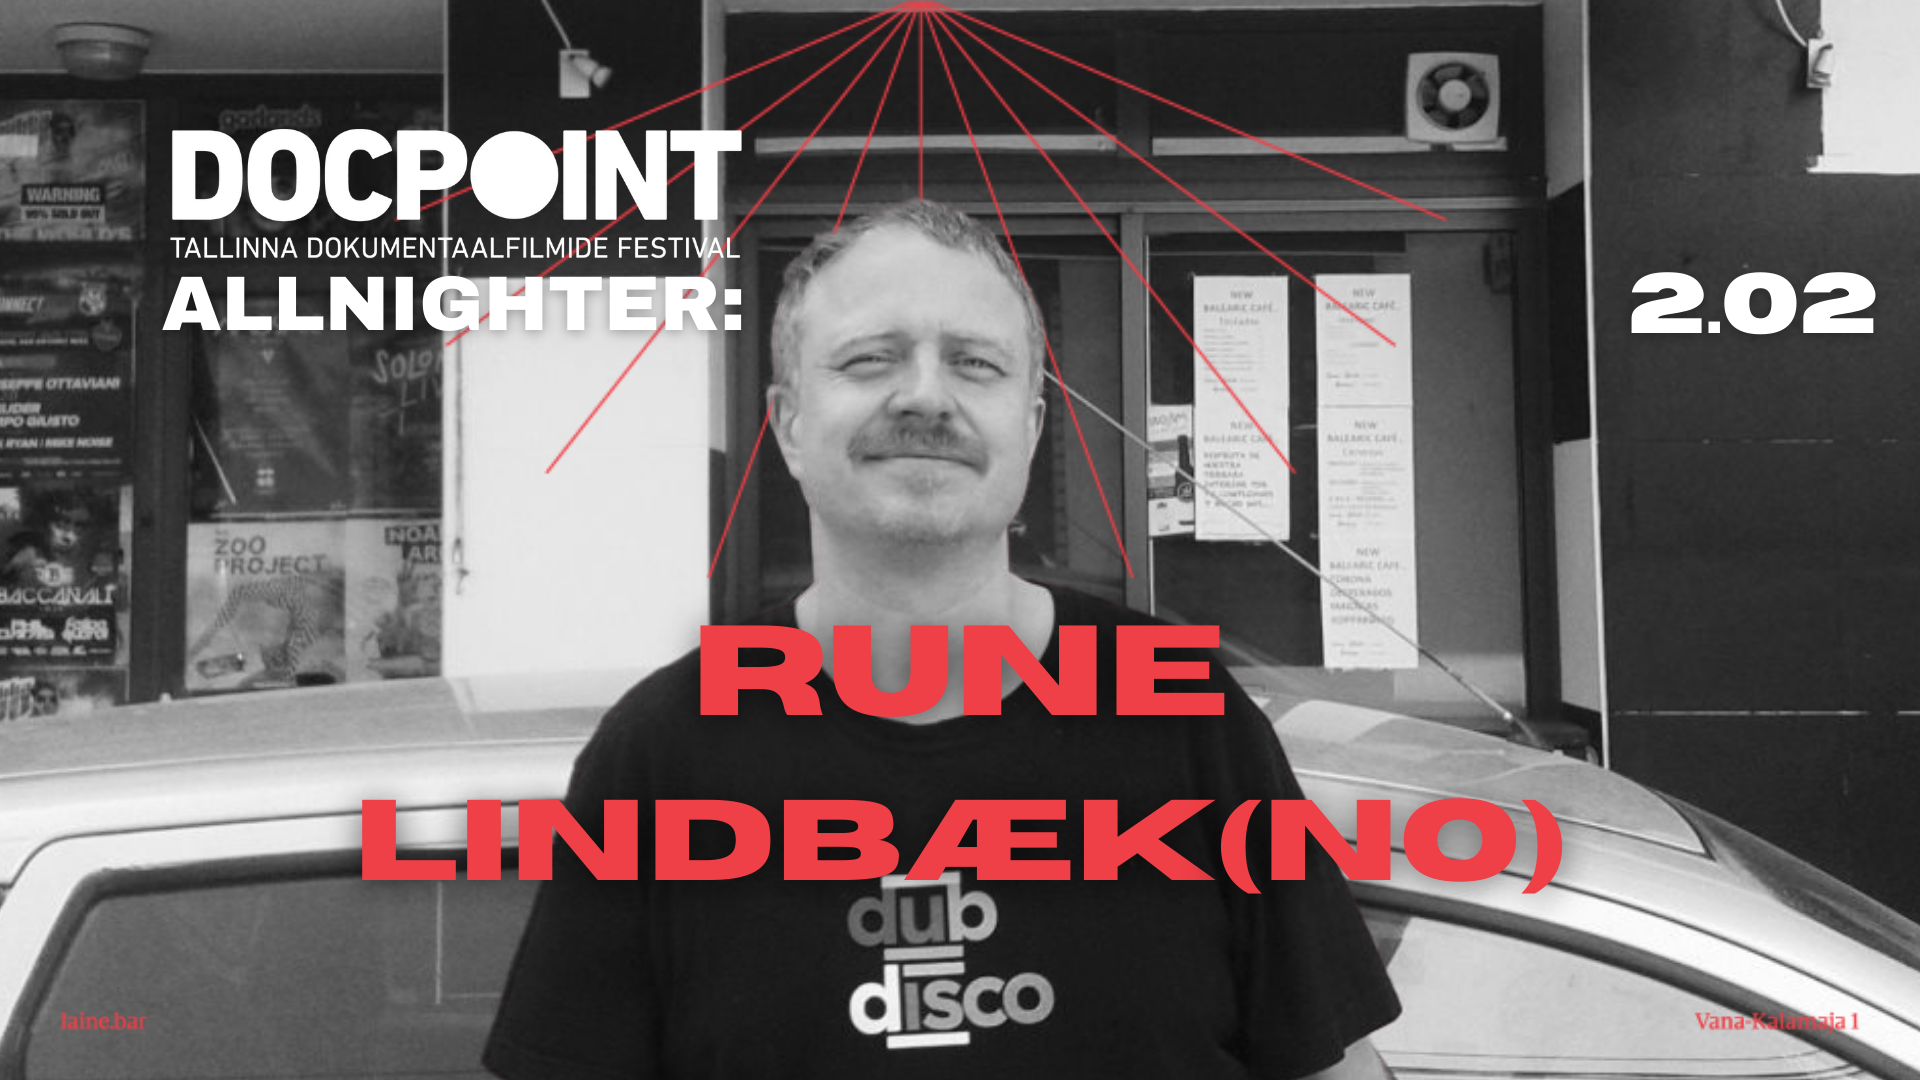 Docpoint Allnighter: Rune Lindbæk (NO) // DJ Rain Tolk, Ott Kelpman - Página frontal